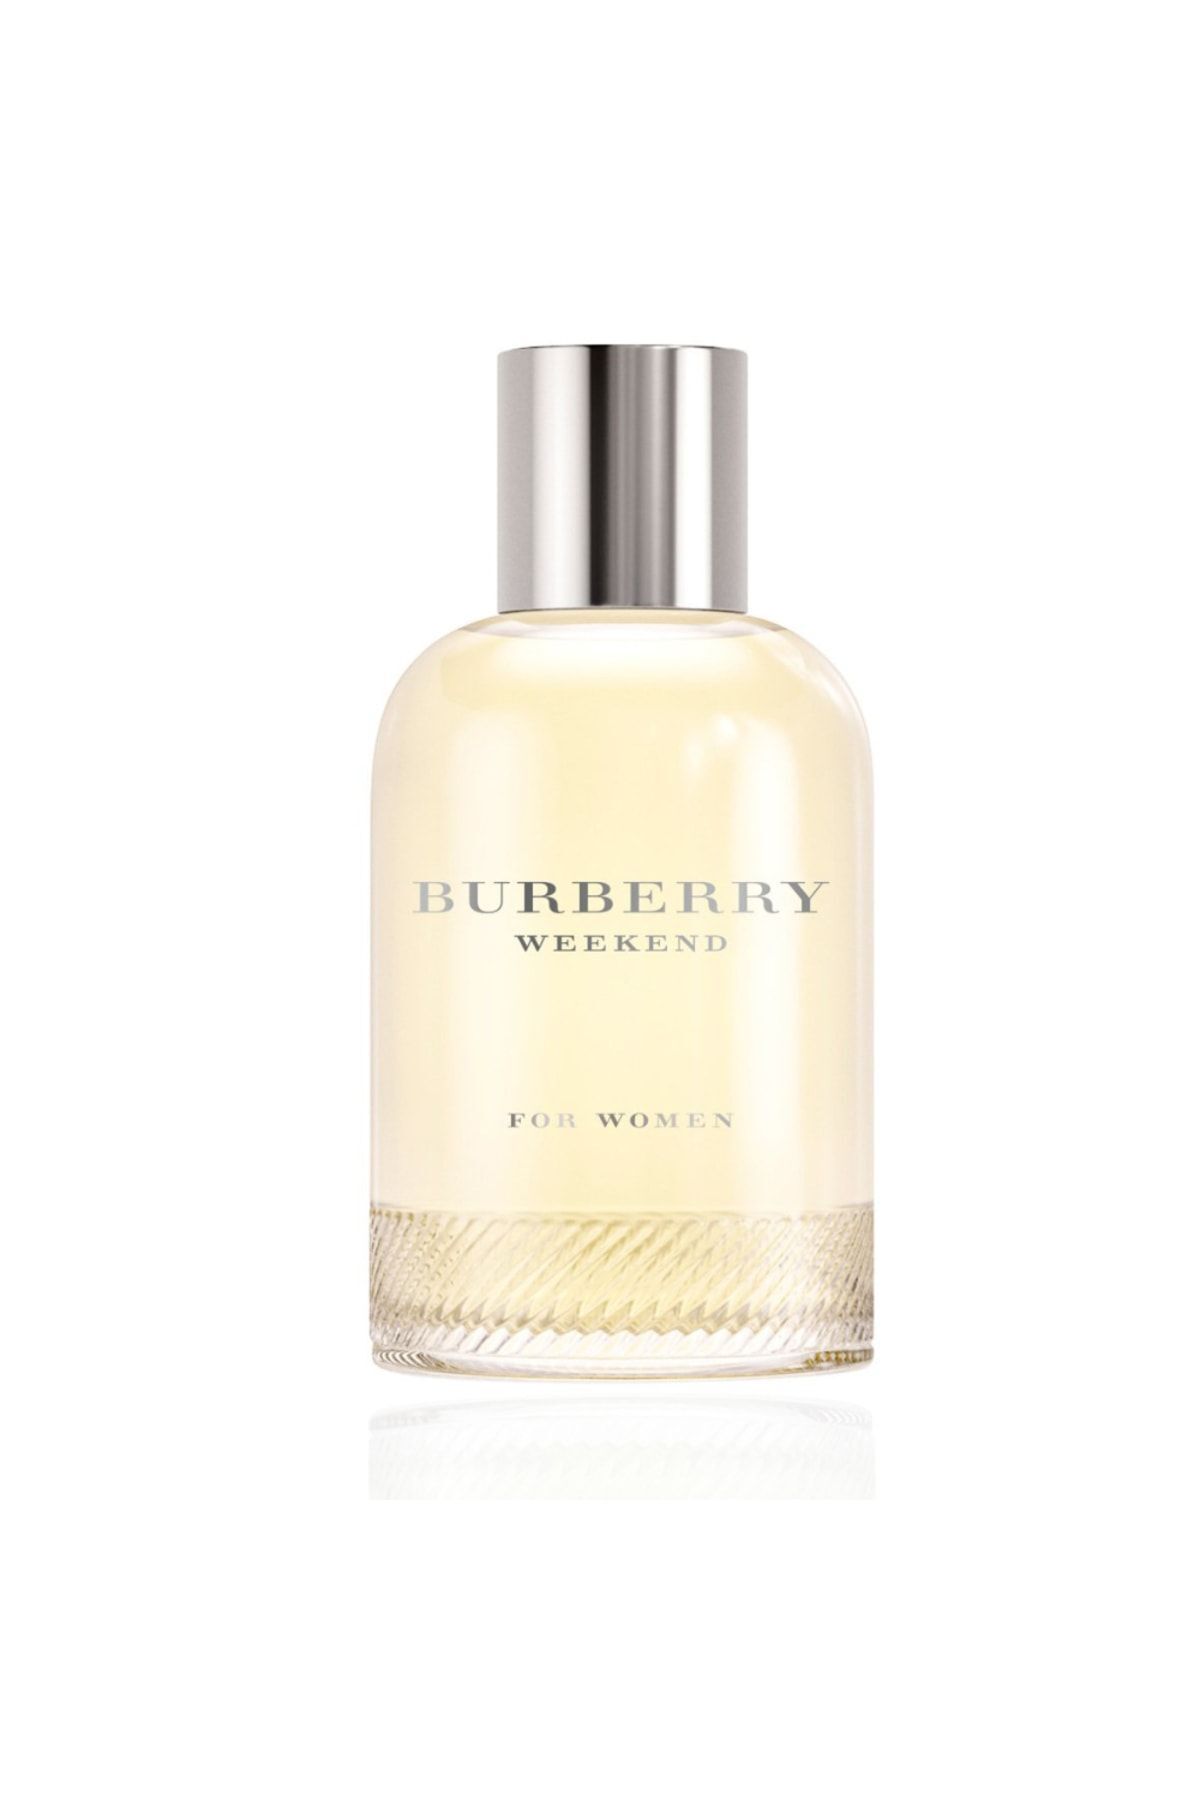 Burberry Weekend Women Edp 100 ml Kadın Parfüm